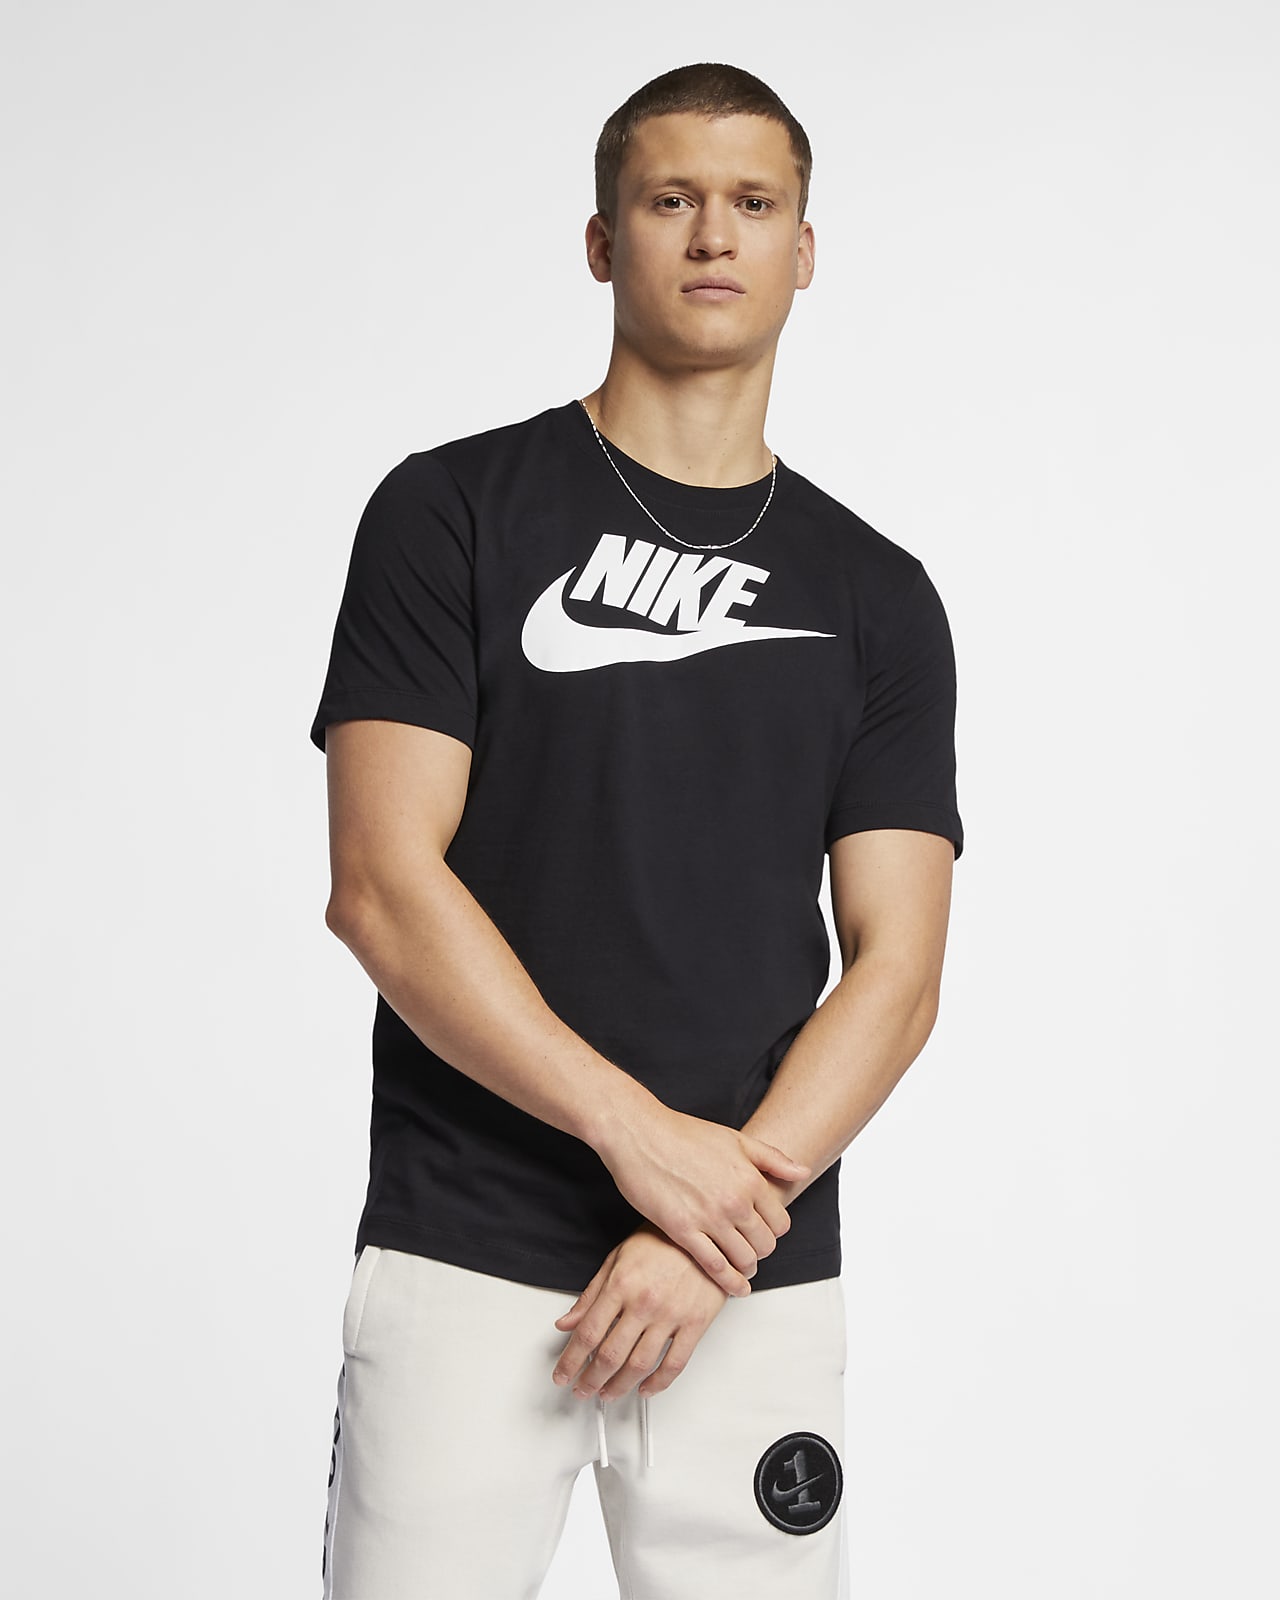 Equipo de juegos Primero Ineficiente Nike Sportswear Camiseta - Hombre. Nike ES